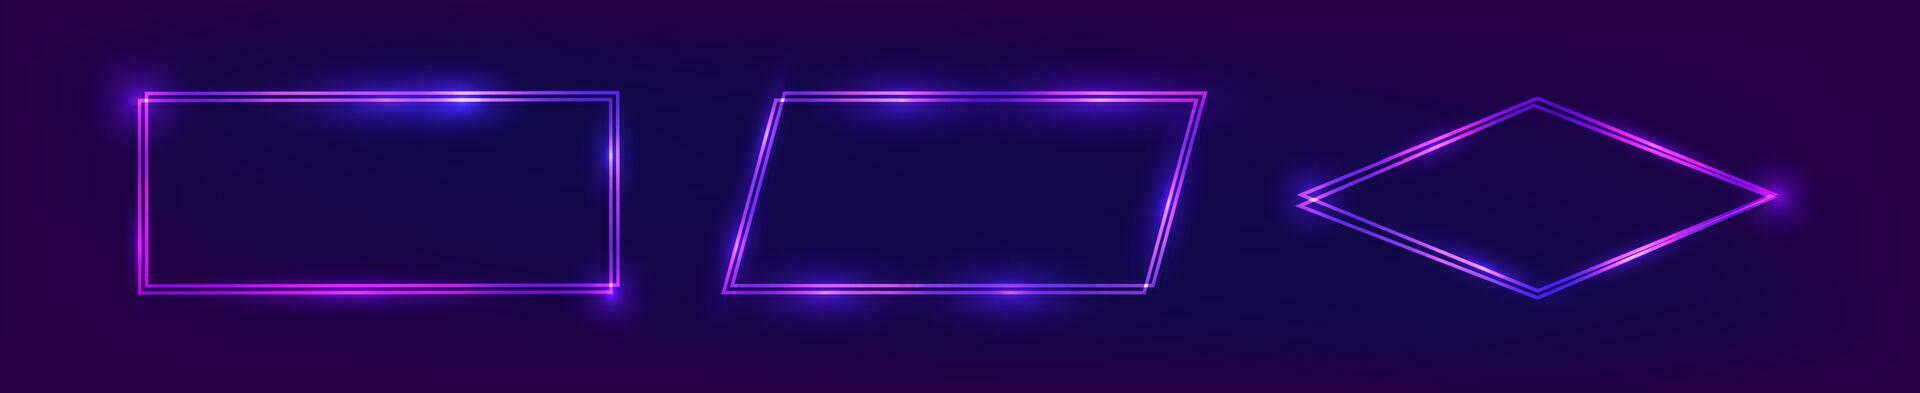 einstellen von Neon- doppelt Frames mit leuchtenden Auswirkungen vektor